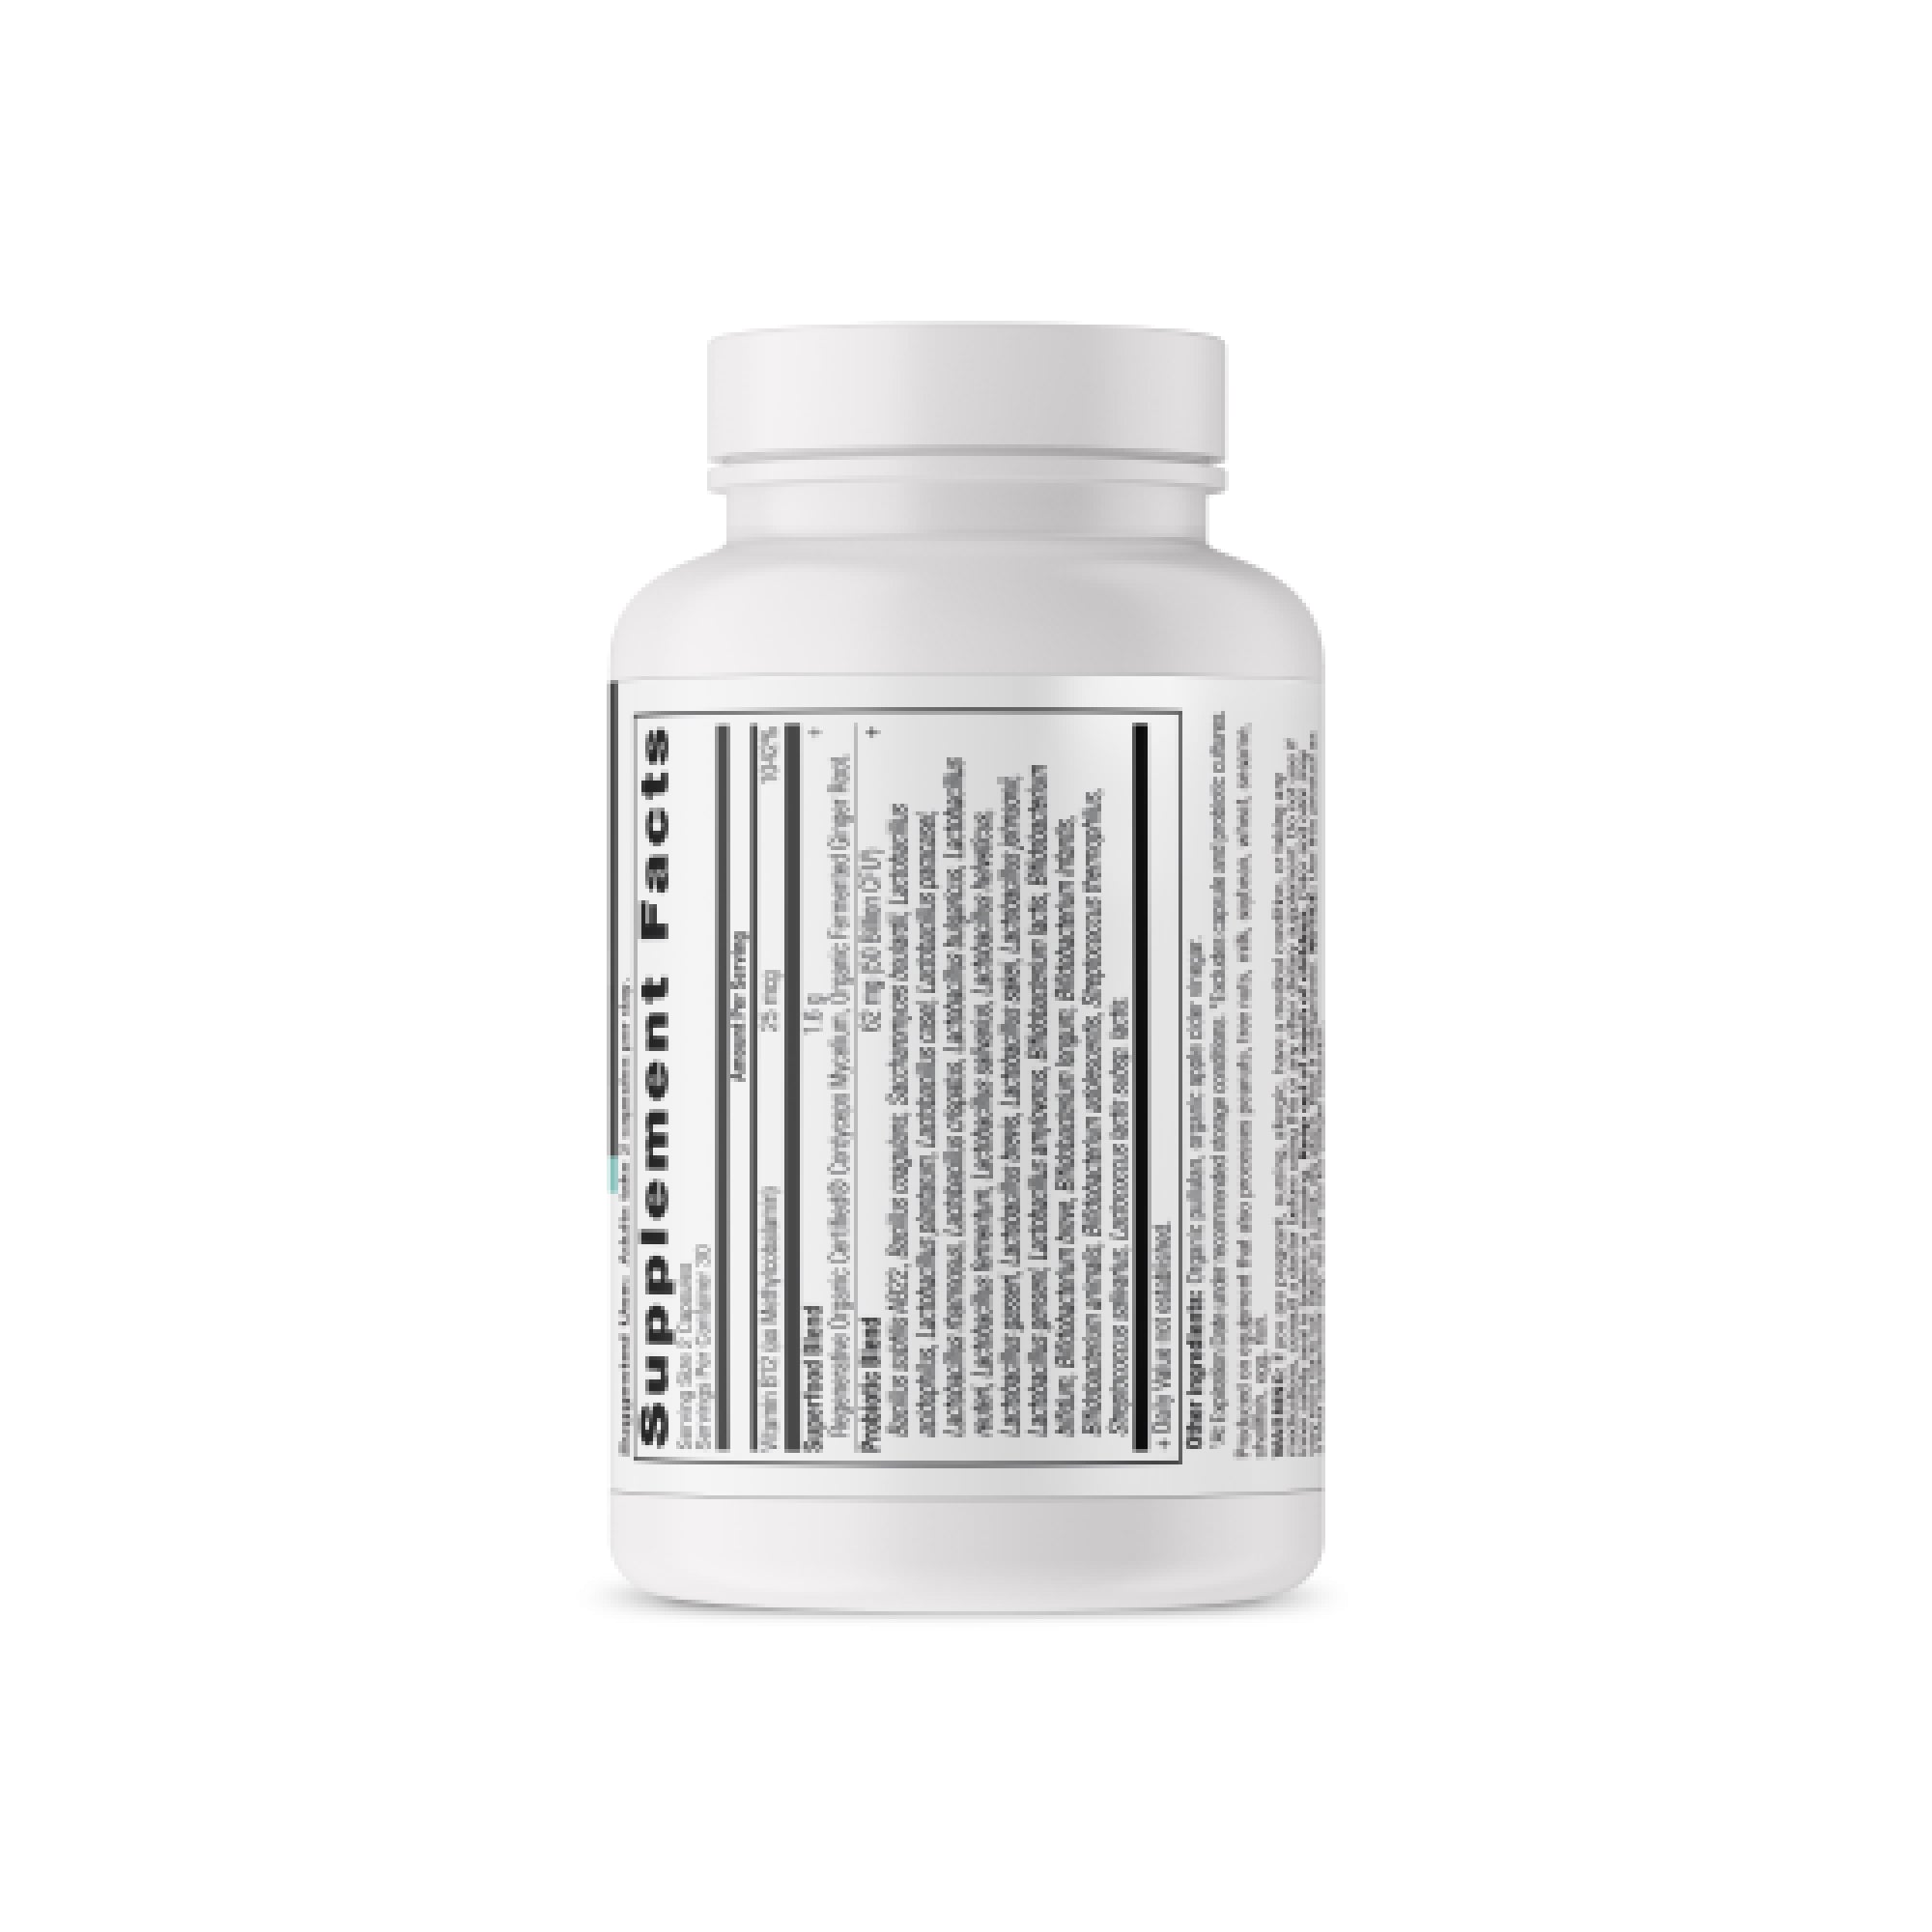 Regenerative Organic Certified™ Metabolism Support Probiotics back of bottle